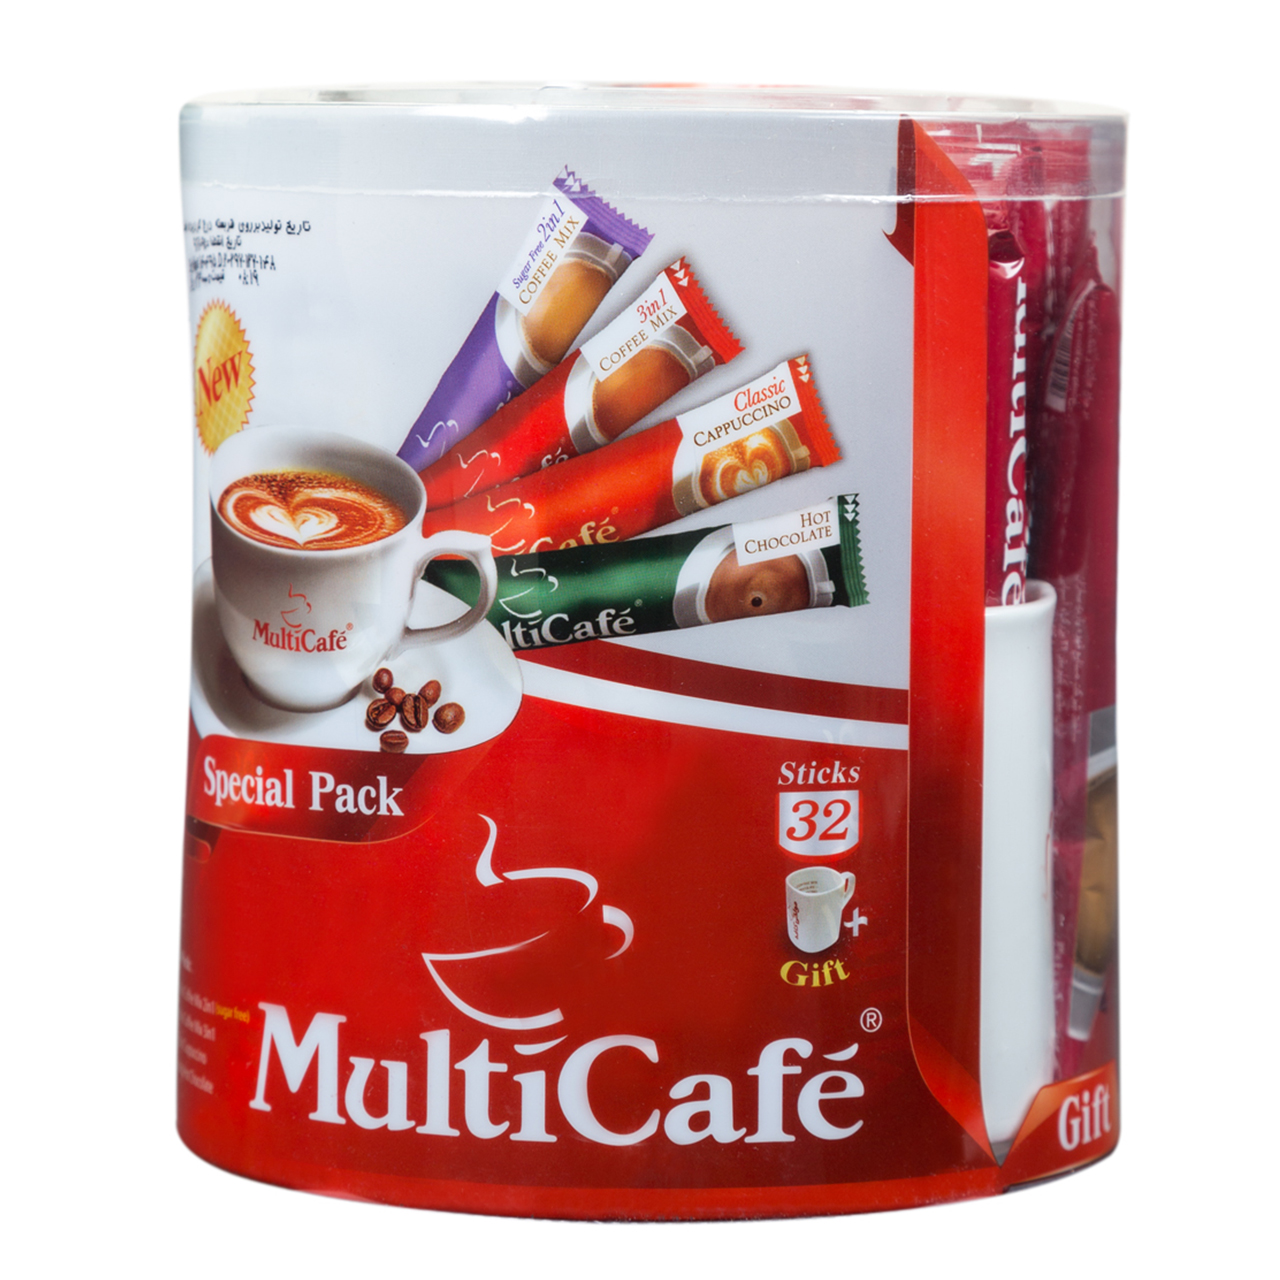 بسته ویژه مولتی کافه مقدار 600 گرم - 32 ساشه به همراه ماگ هدیه